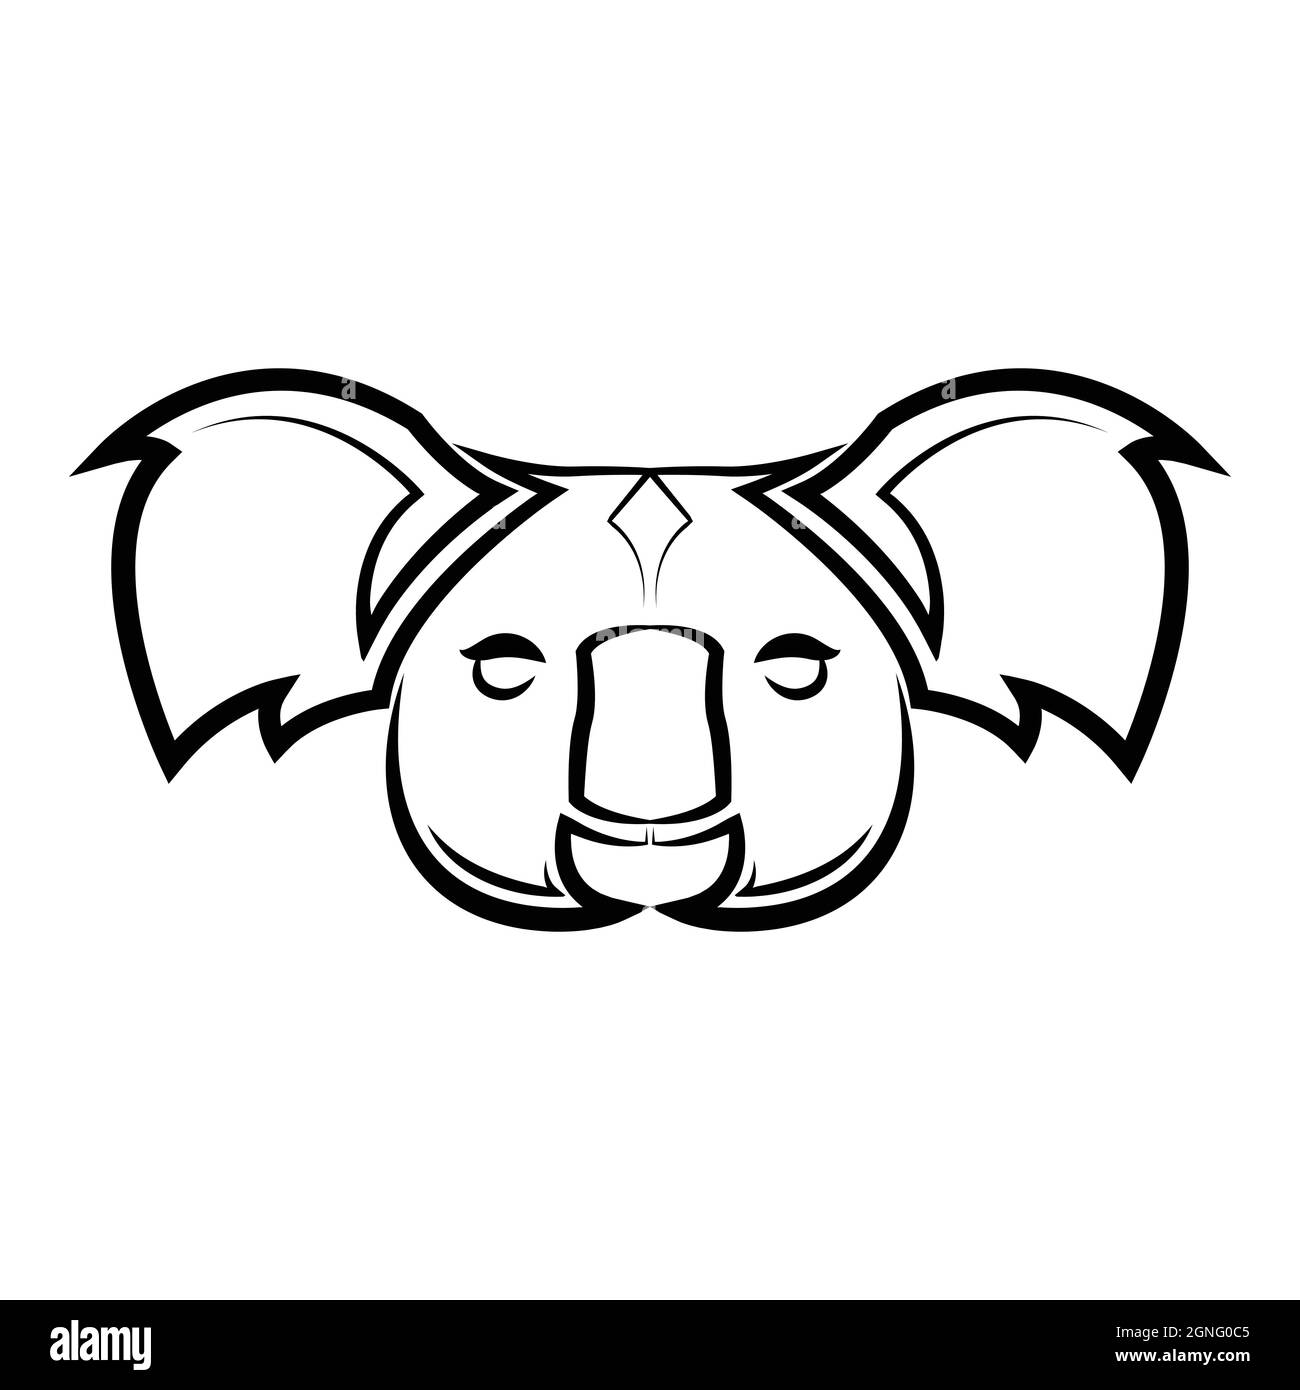 Art noir et blanc de la tête de koala. Bon usage pour symbole, mascotte, icône, avatar, tatouage, T-shirt design, logo ou tout autre design. Illustration de Vecteur